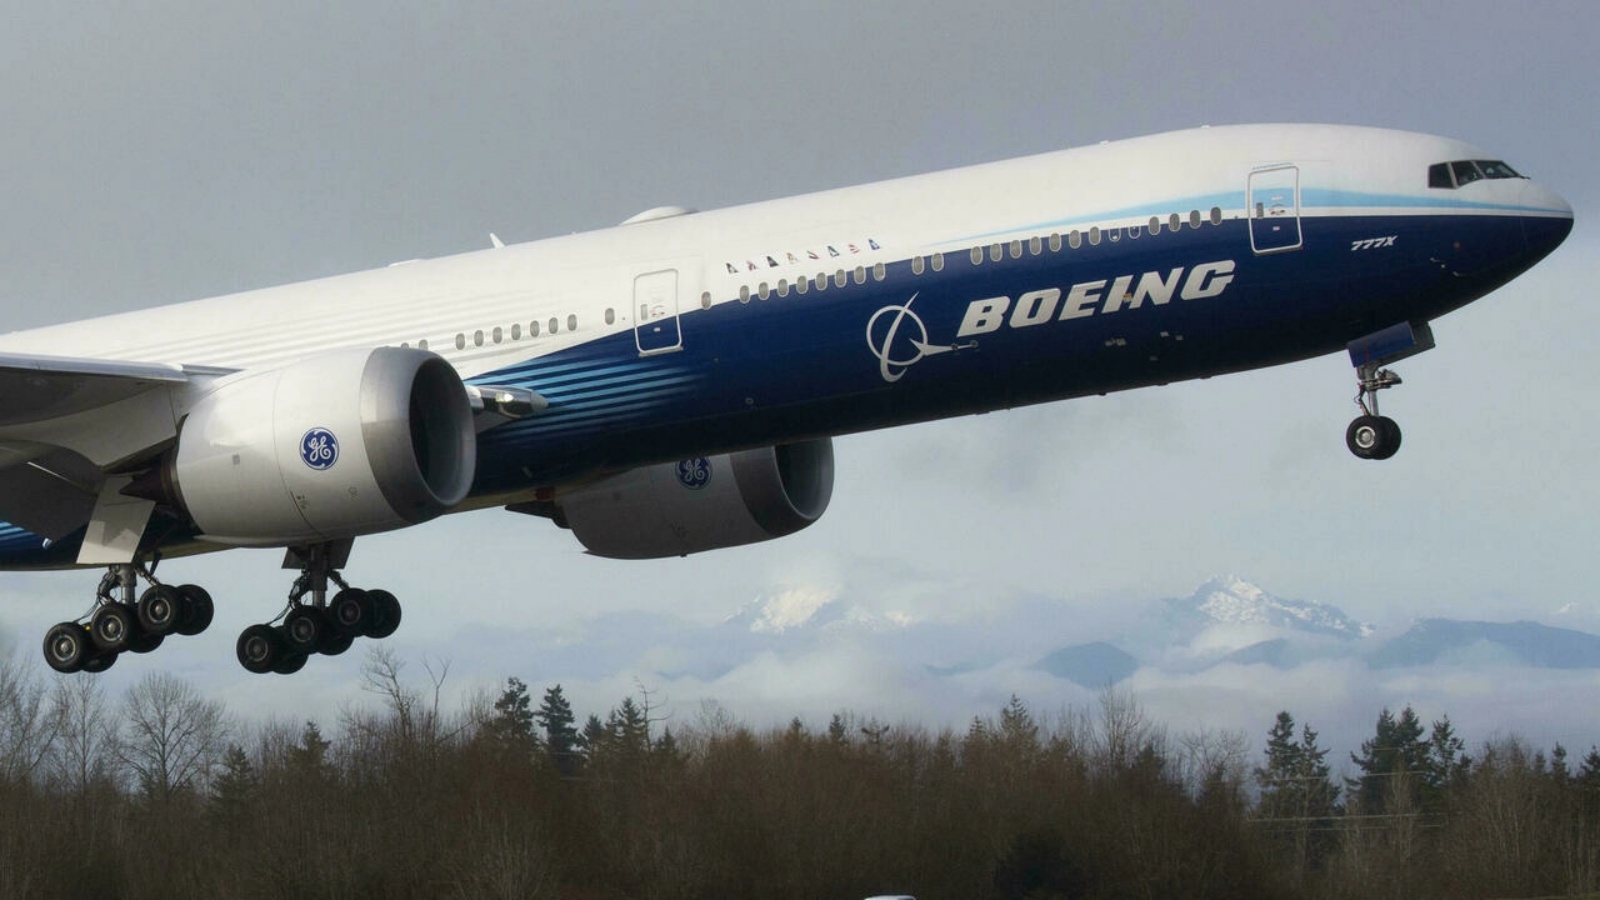 طائرة بوينج 777 إكس تقلع في رحلتها الافتتاحية في 25 كانون الثاني/يناير 2020.